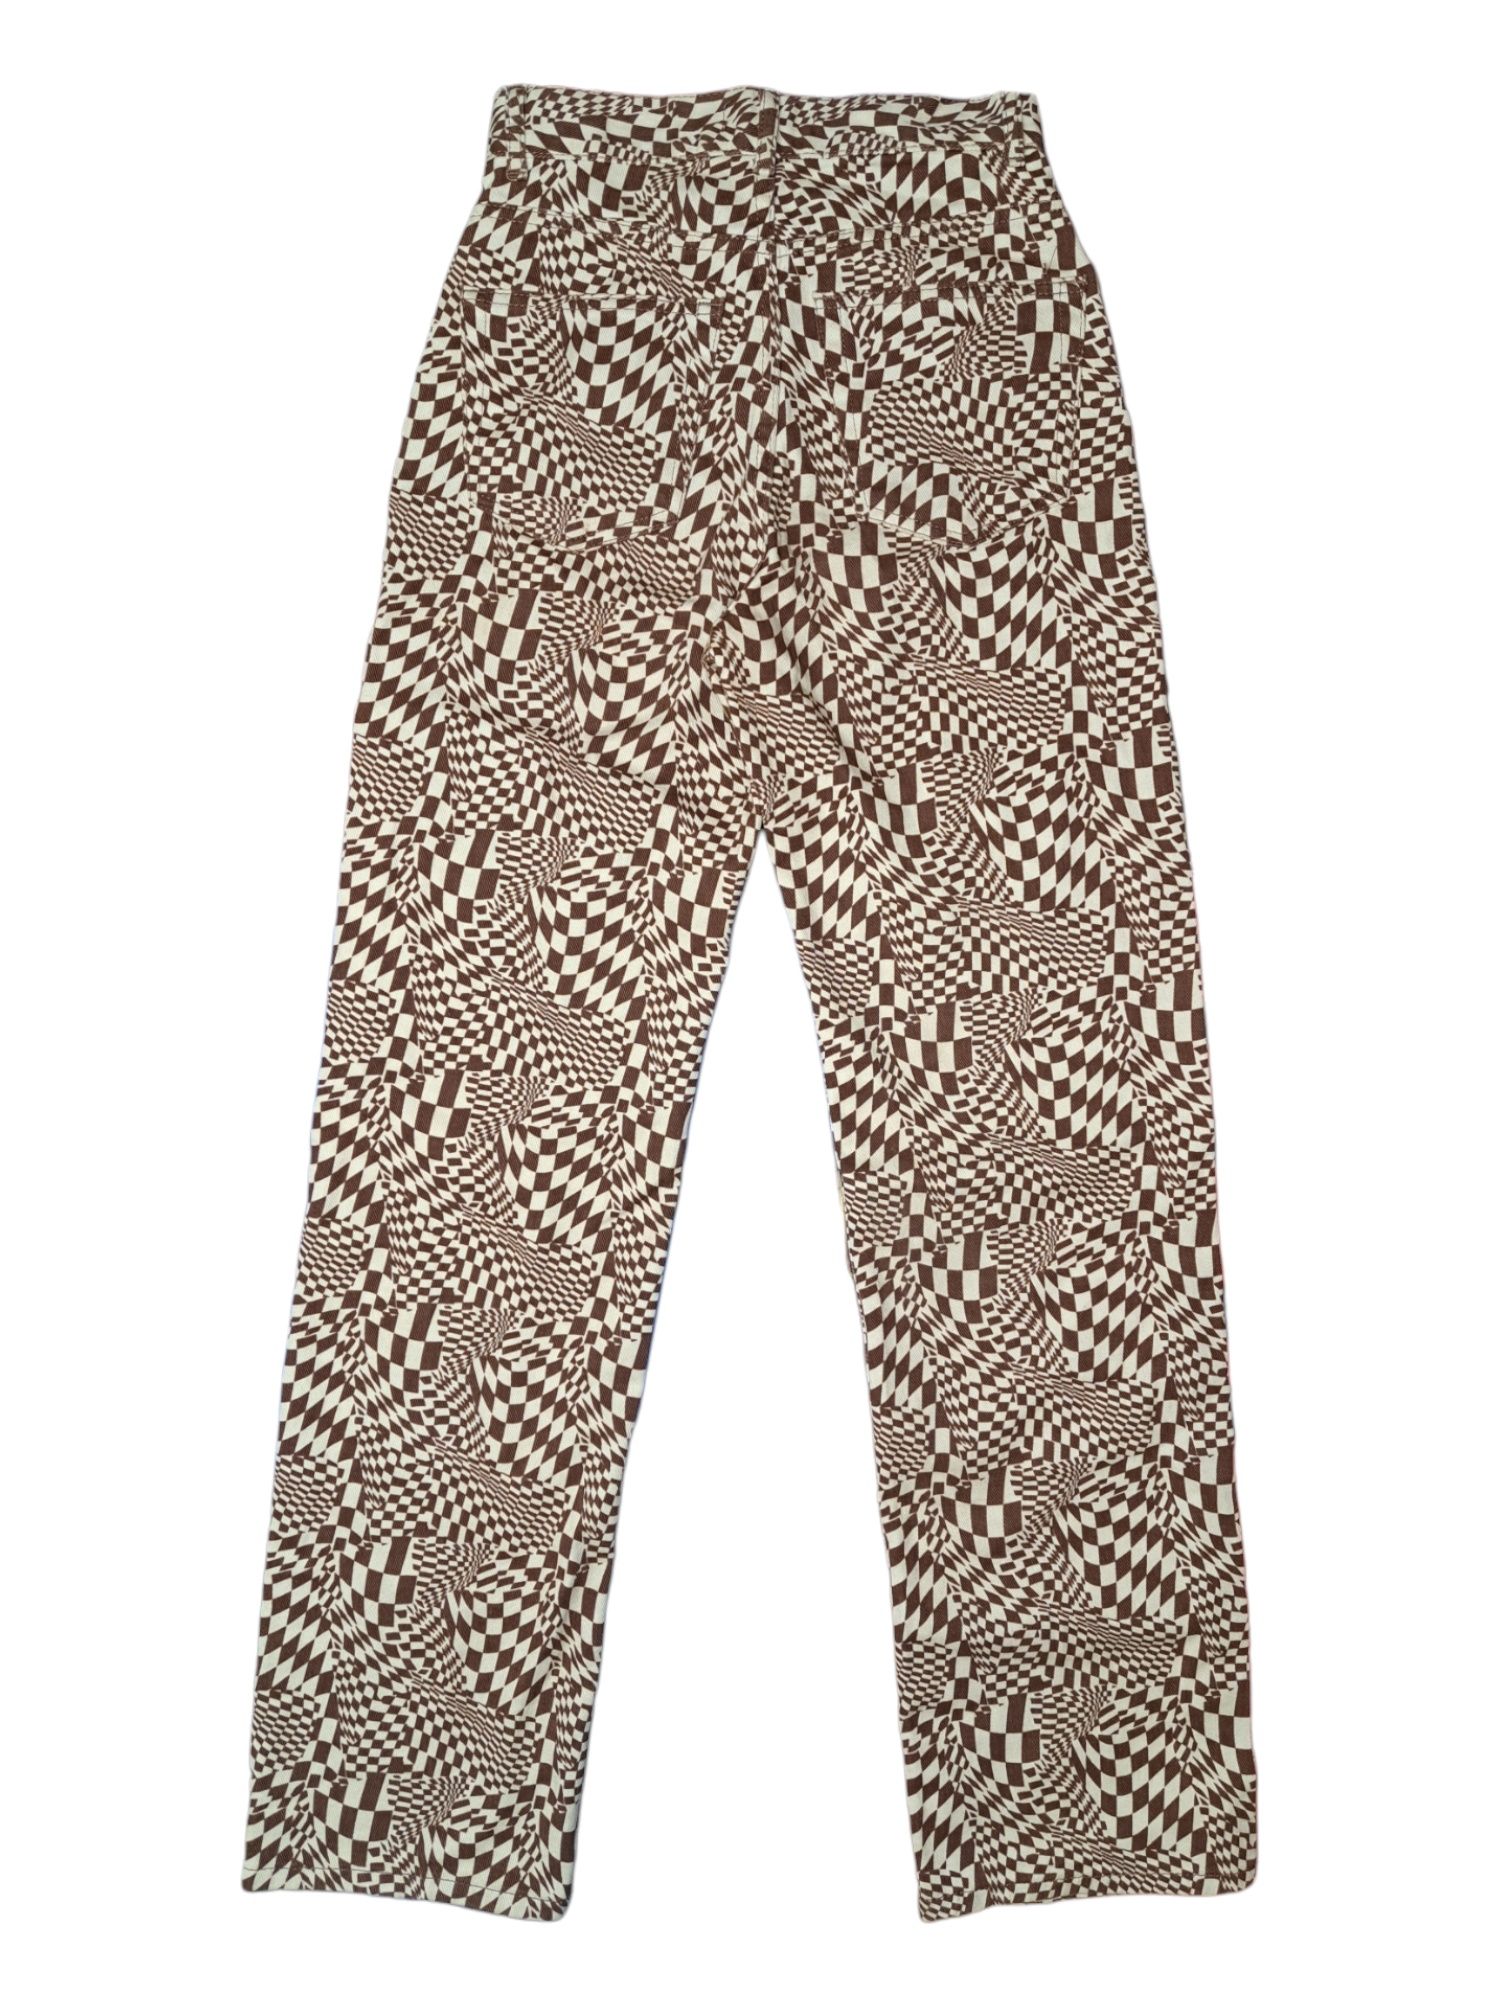 Nowe Piękne Spodnie Pull&bear rozmiarze 34, Zara Bershka Levi's Diesel